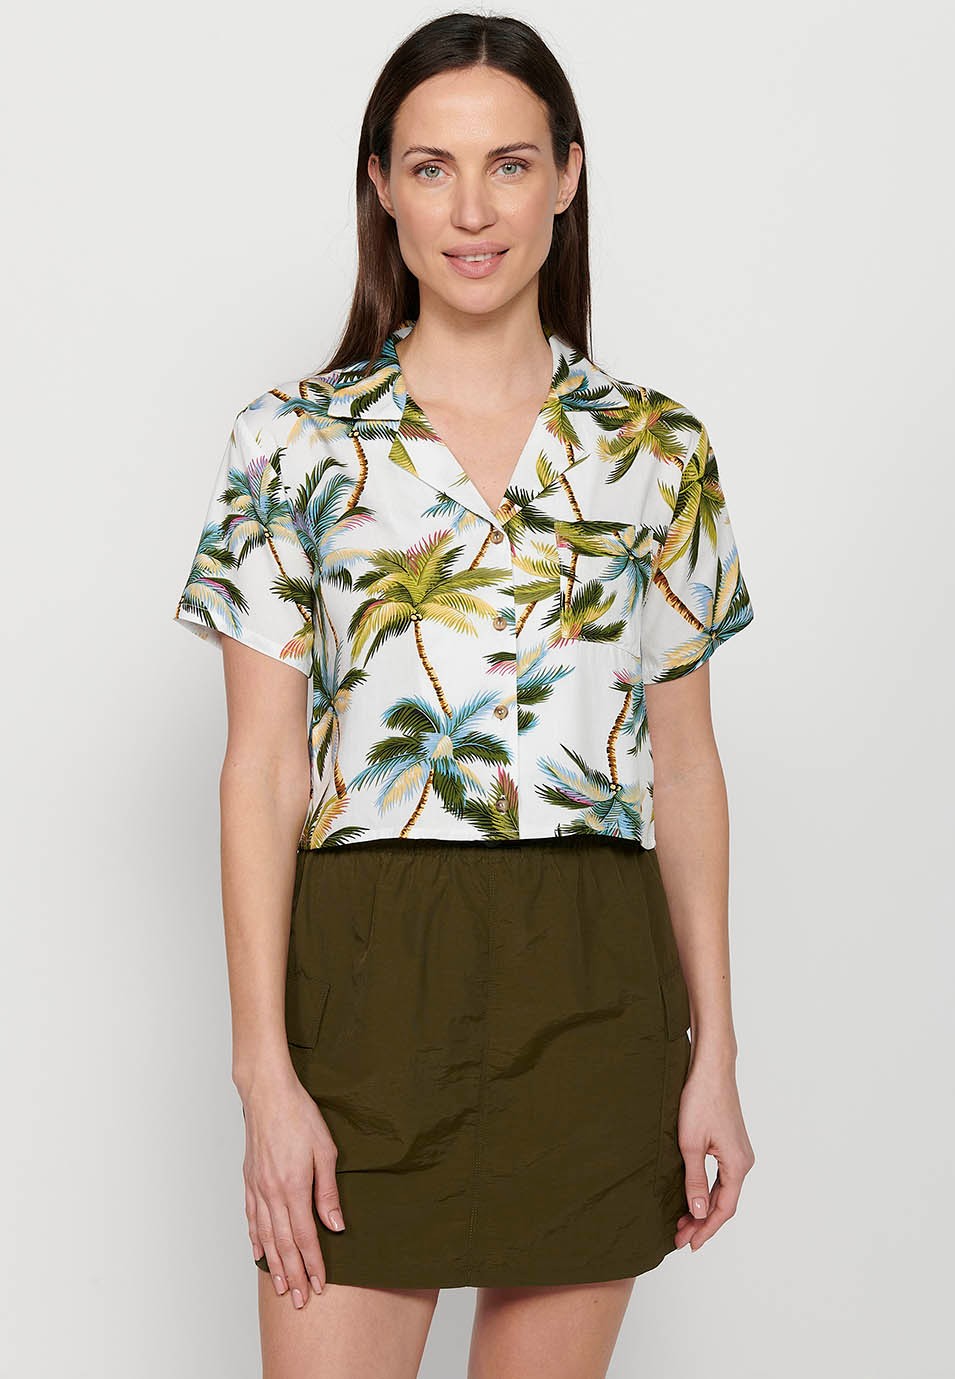 Damen-Bluse mit mehrfarbigem Revers, Hemdkragen, Blumendruck und kurzen Ärmeln